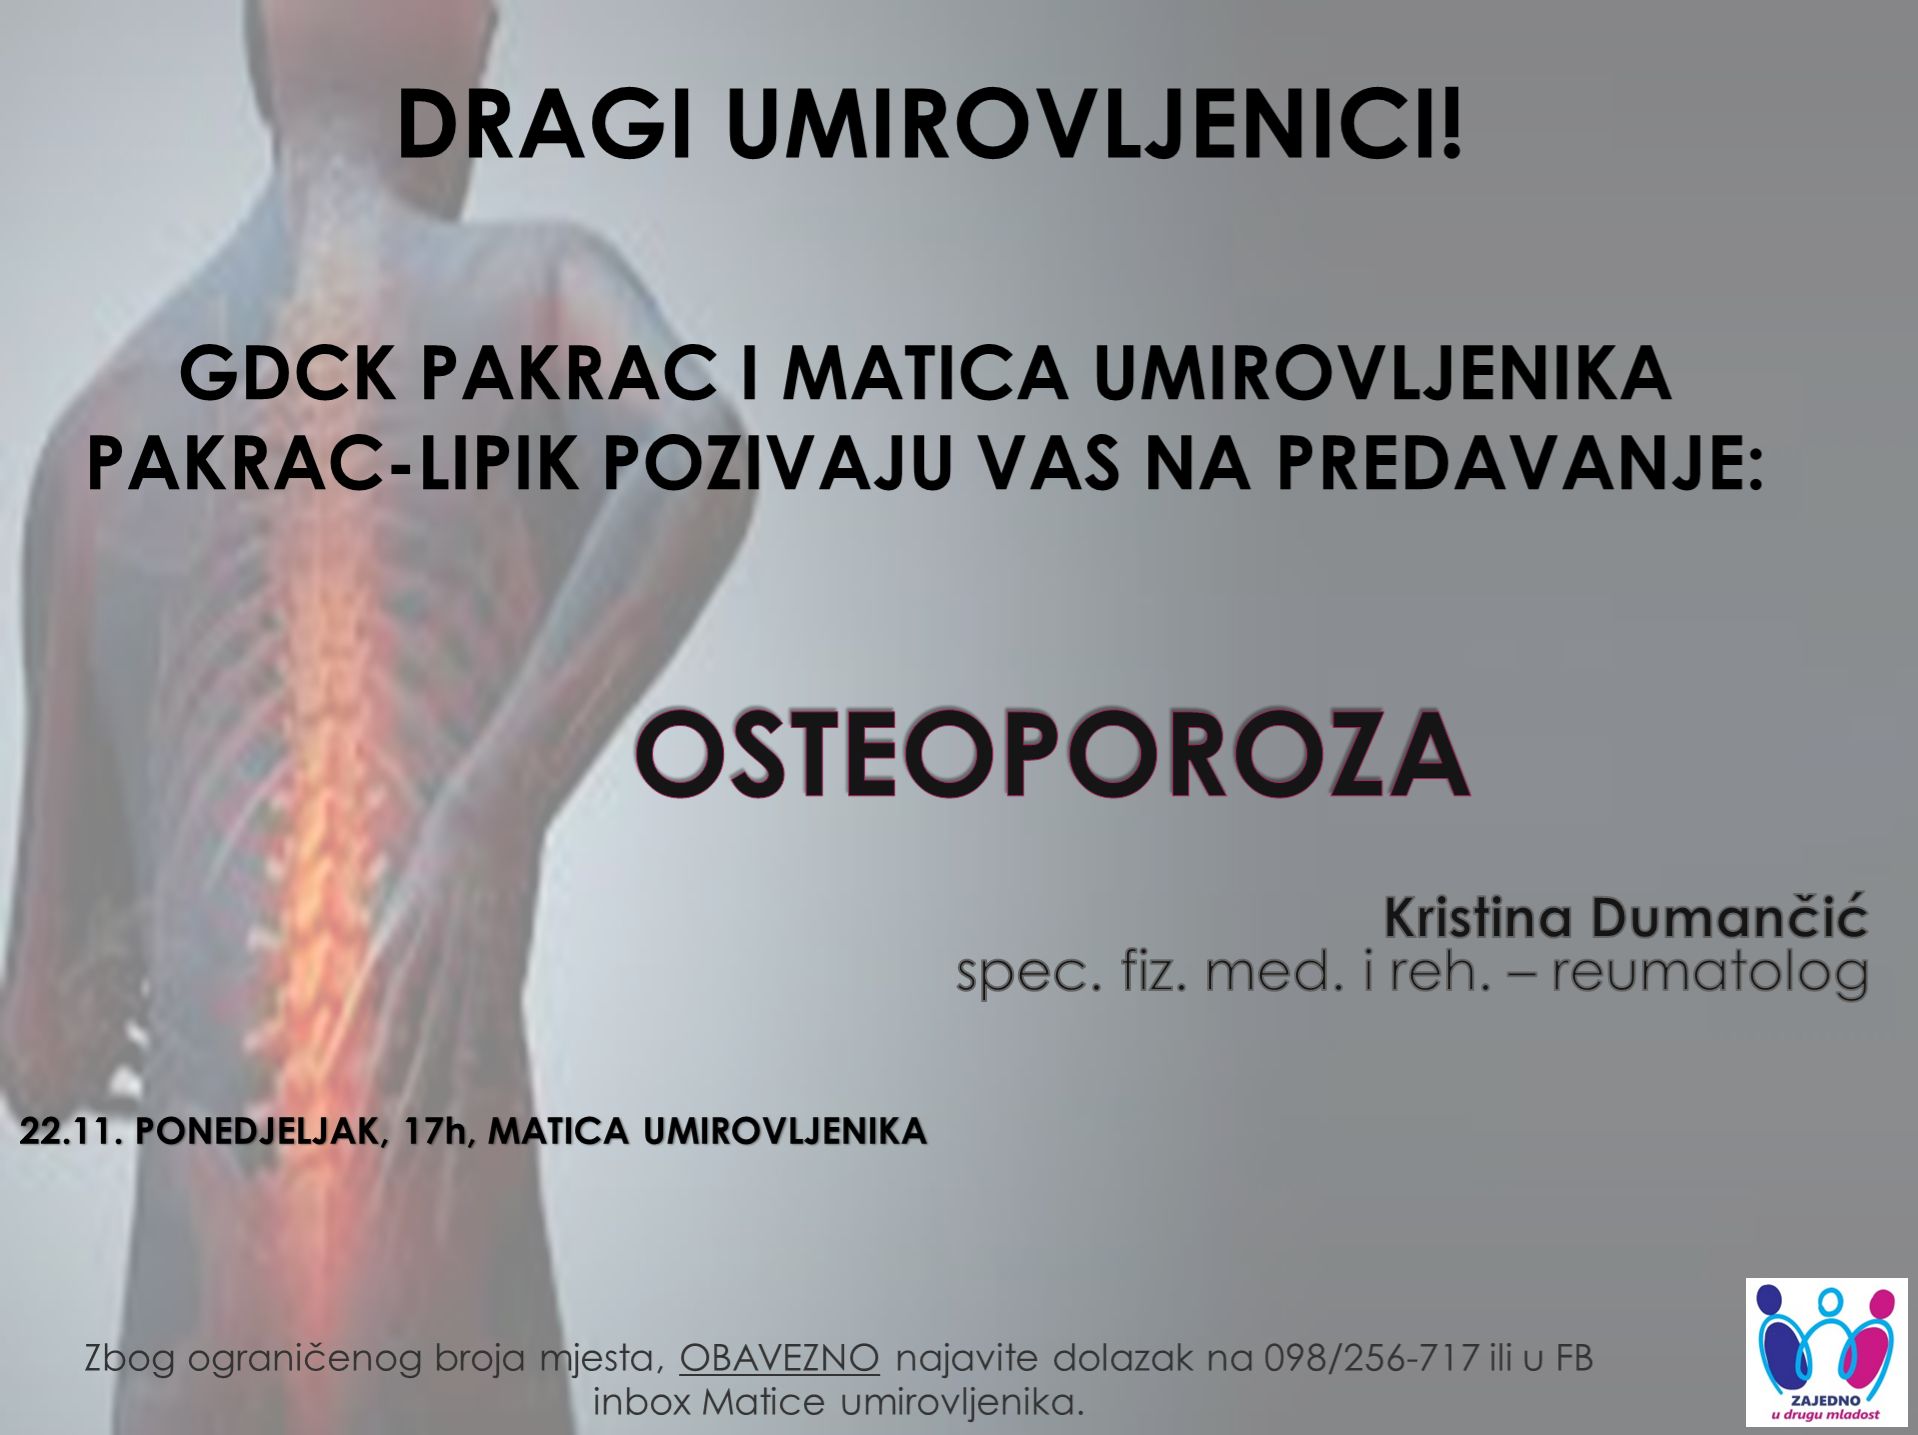 (PROMO) "ZAJEDNO U DRUGU MLADOST"/PONEDJELJAK: Predavanje za umirovljenike o osteoporozi